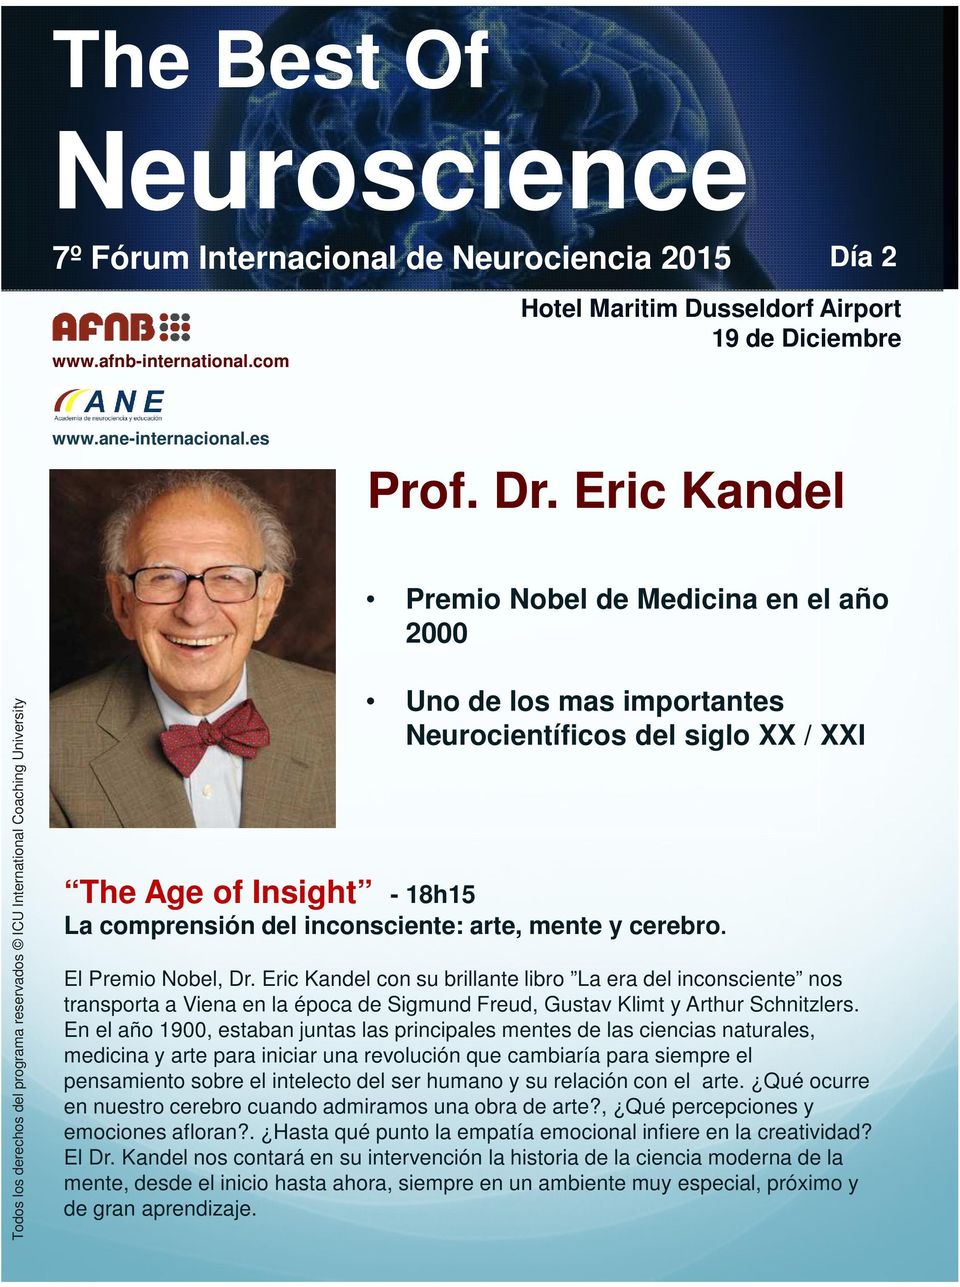 El Premio Nobel, Dr. Eric Kandel con su brillante libro La era del inconsciente nos transporta a Viena en la época de Sigmund Freud, Gustav Klimt y Arthur Schnitzlers.